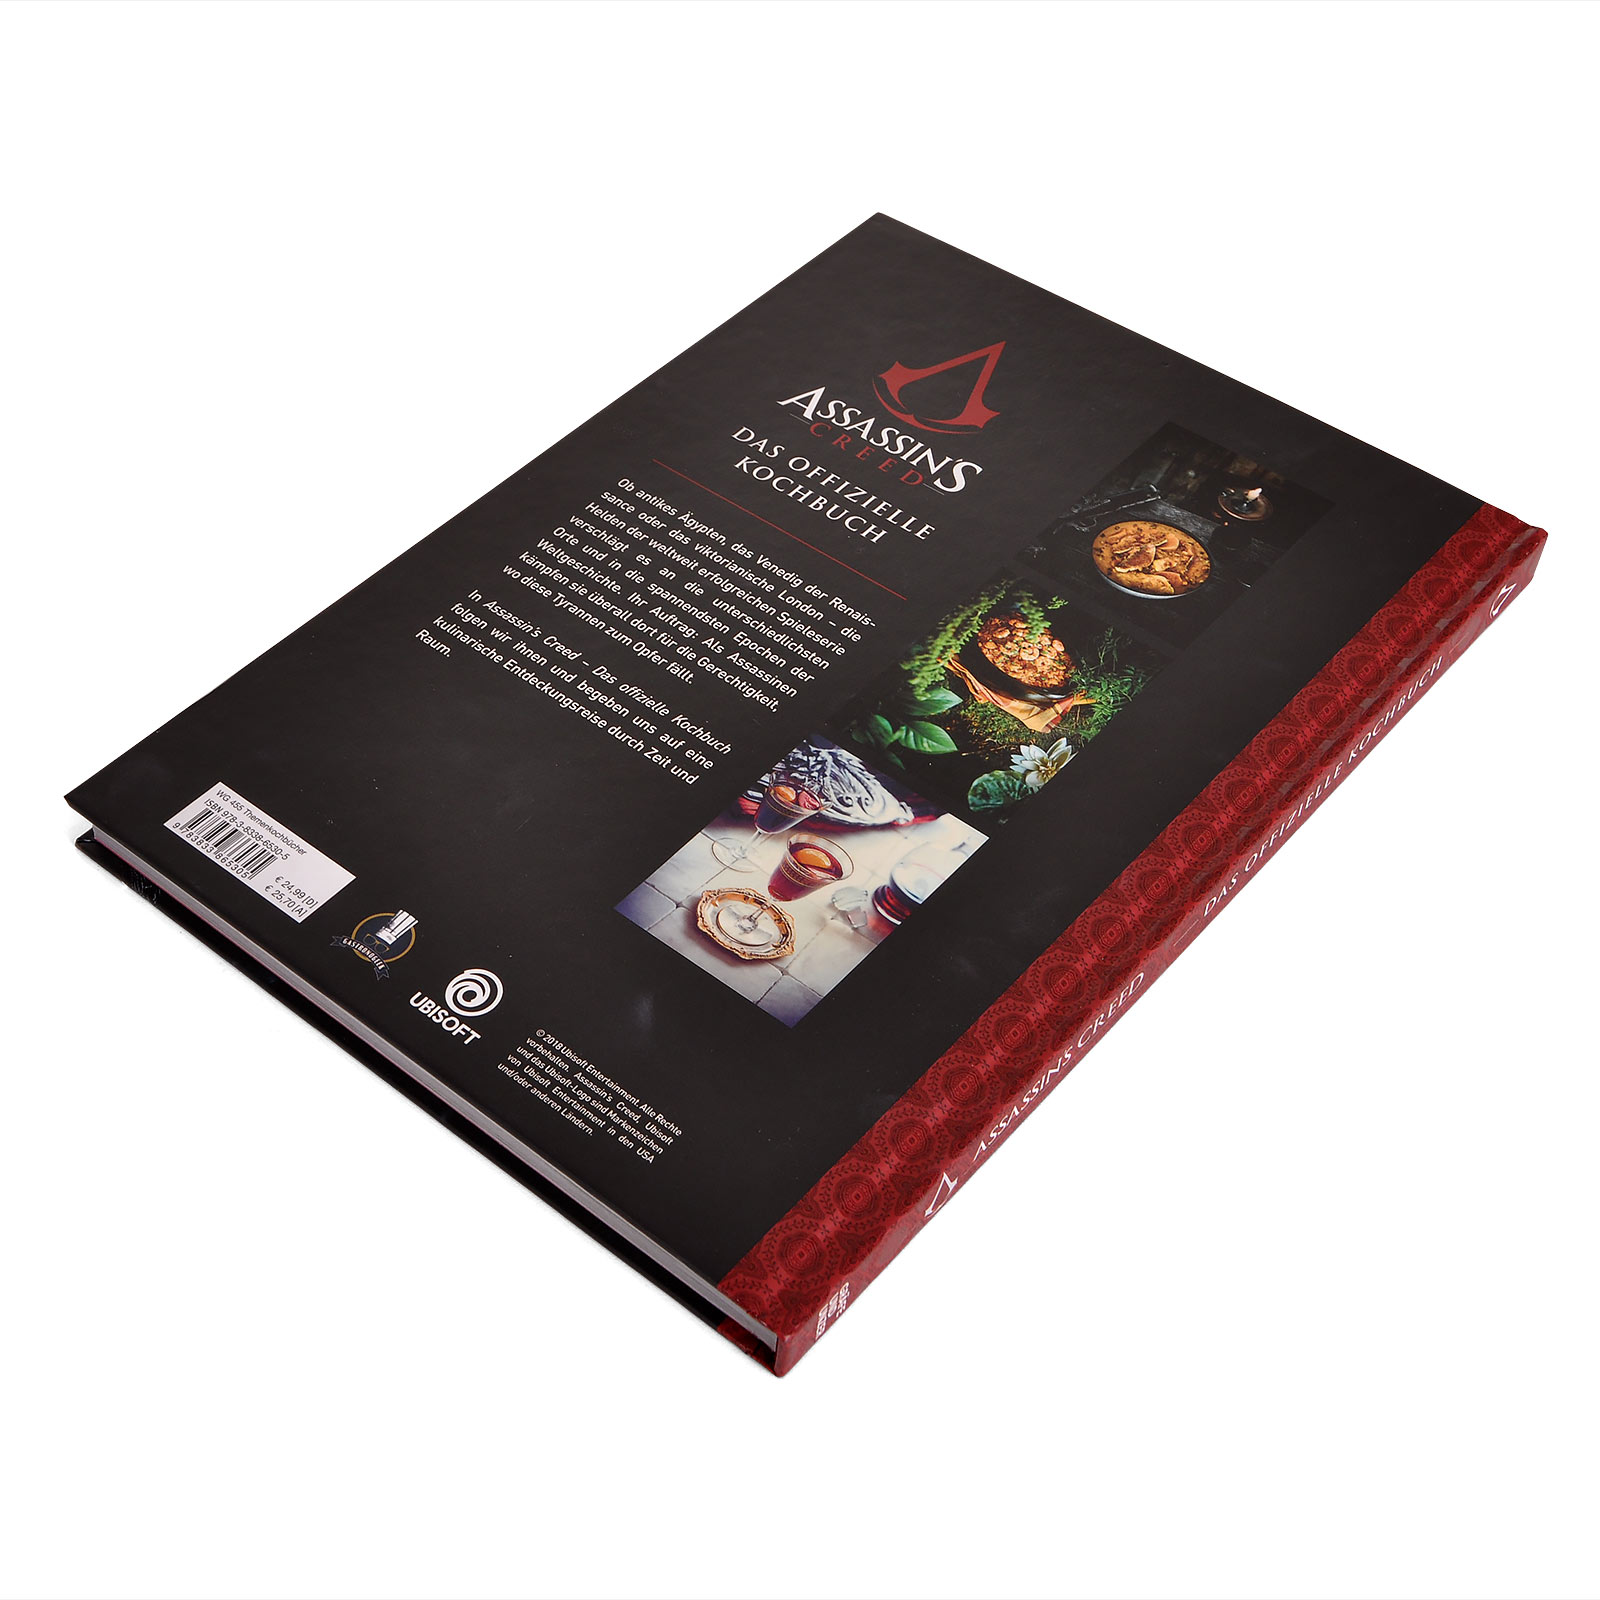 Assassins Creed - Das offizielle Kochbuch